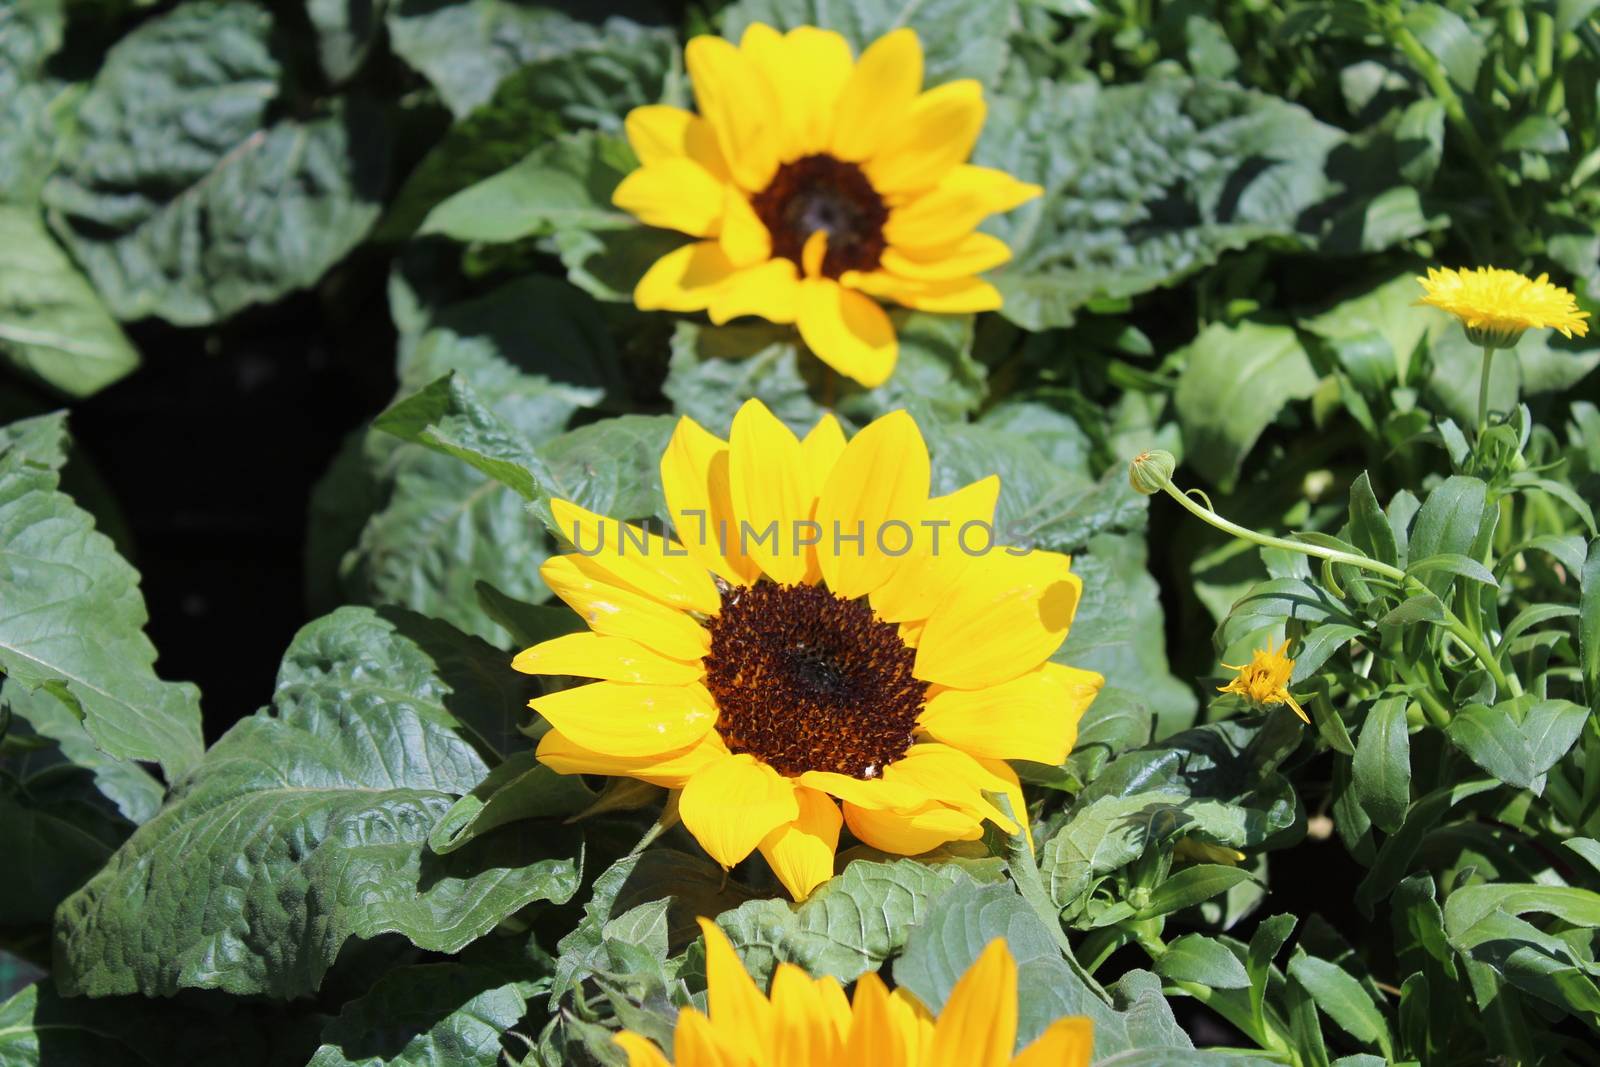 little sunflowers in the garden by martina_unbehauen